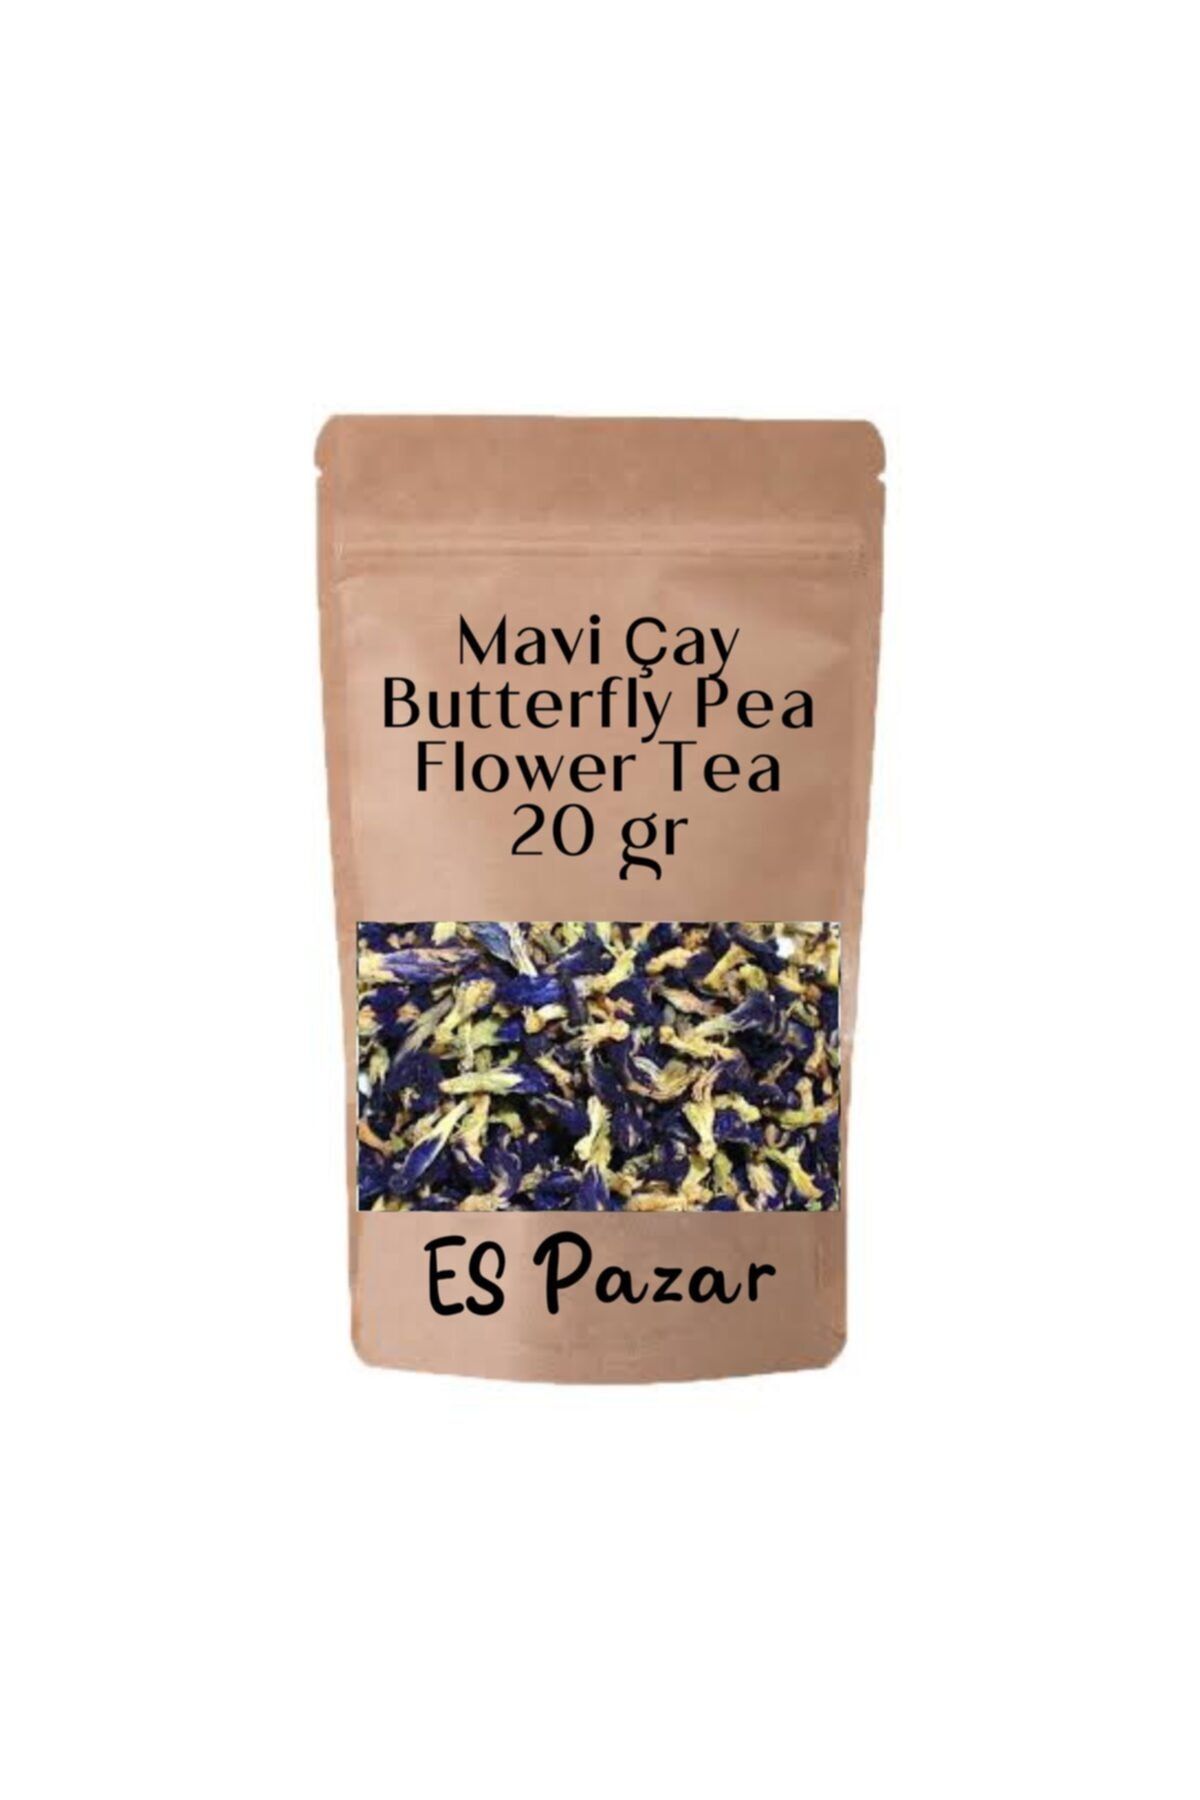 ES PAZAR Mavi Çay Butterfly Pea Flower Tea Mavi Kelebek Sarmaşığı Çayı 20 gr